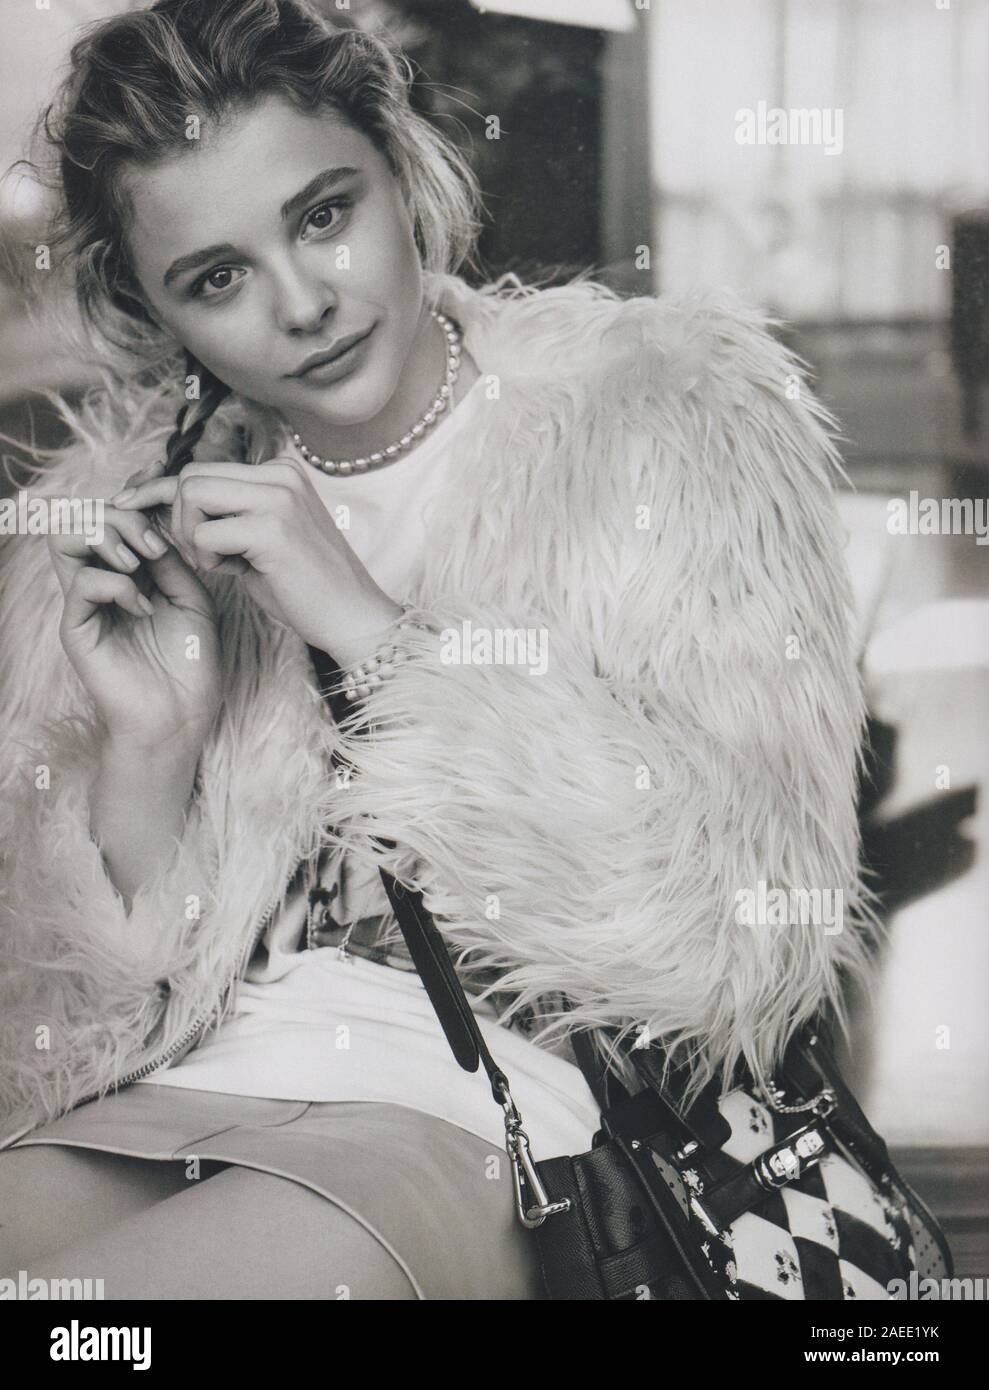 Poster pubblicitari Pullman New York borsetta con Chloe Grace Moretz attrice in magazzino carta dal 2015, pubblicità, annuncio creativi da 2010s Foto Stock